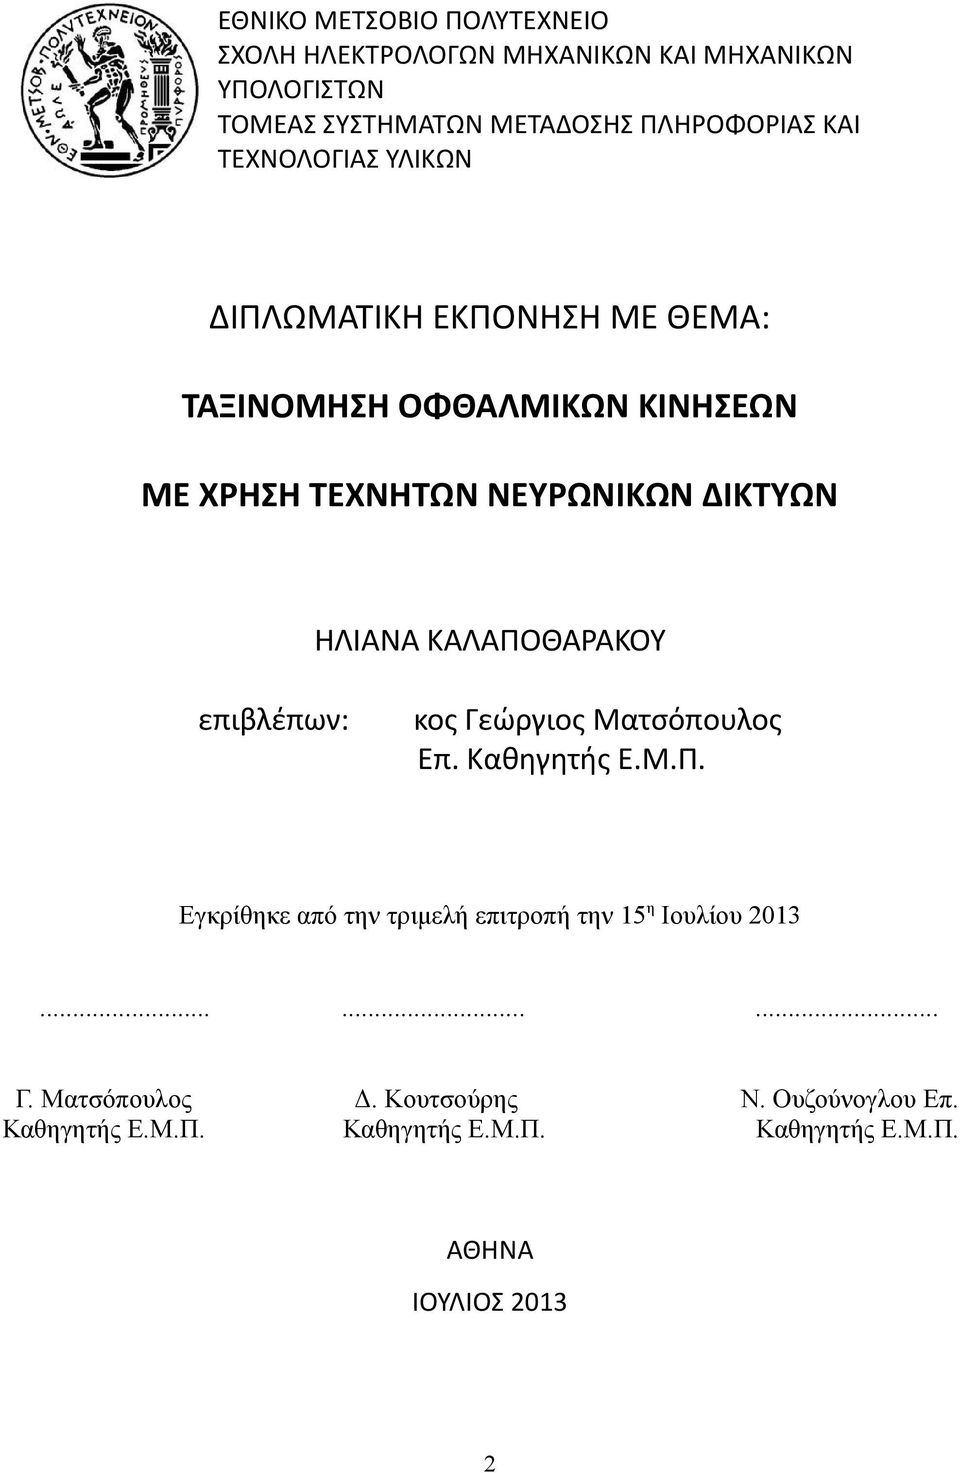 ΚΑΛΑΠΟΘΑΡΑΚΟΥ επιβλέπων: κος Γεώργιος Ματσόπουλος Επ. Καθηγητής Ε.Μ.Π. Εγκρίθηκε από την τριμελή επιτροπή την 15η Ιουλίου 2013.